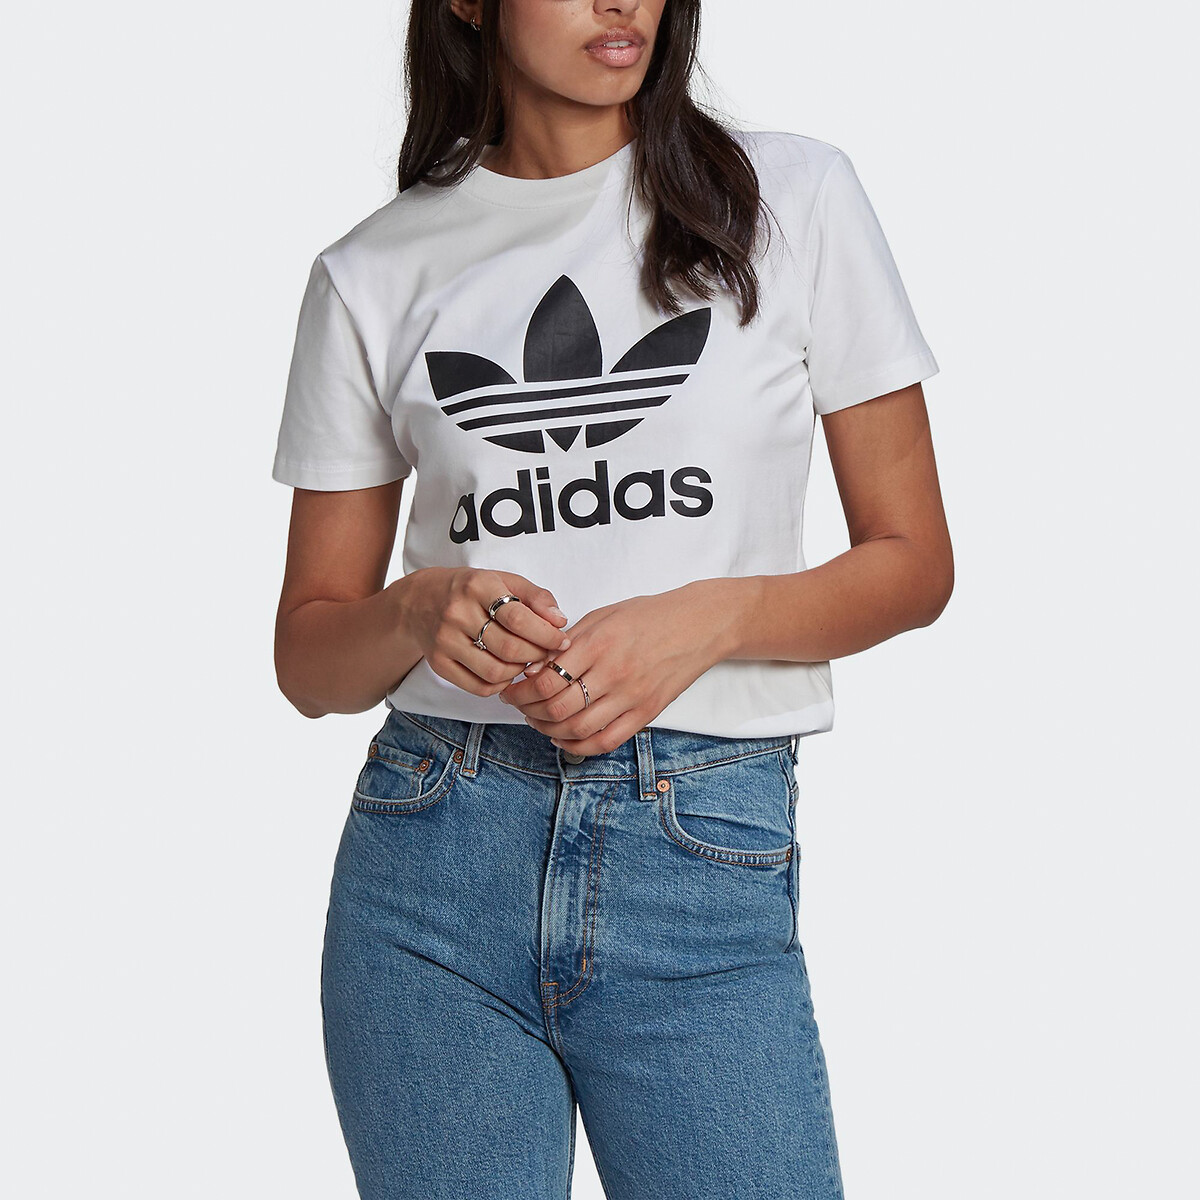 ايفون برو ماكس ١٣ t-shirt court adidas fille شعر محروق